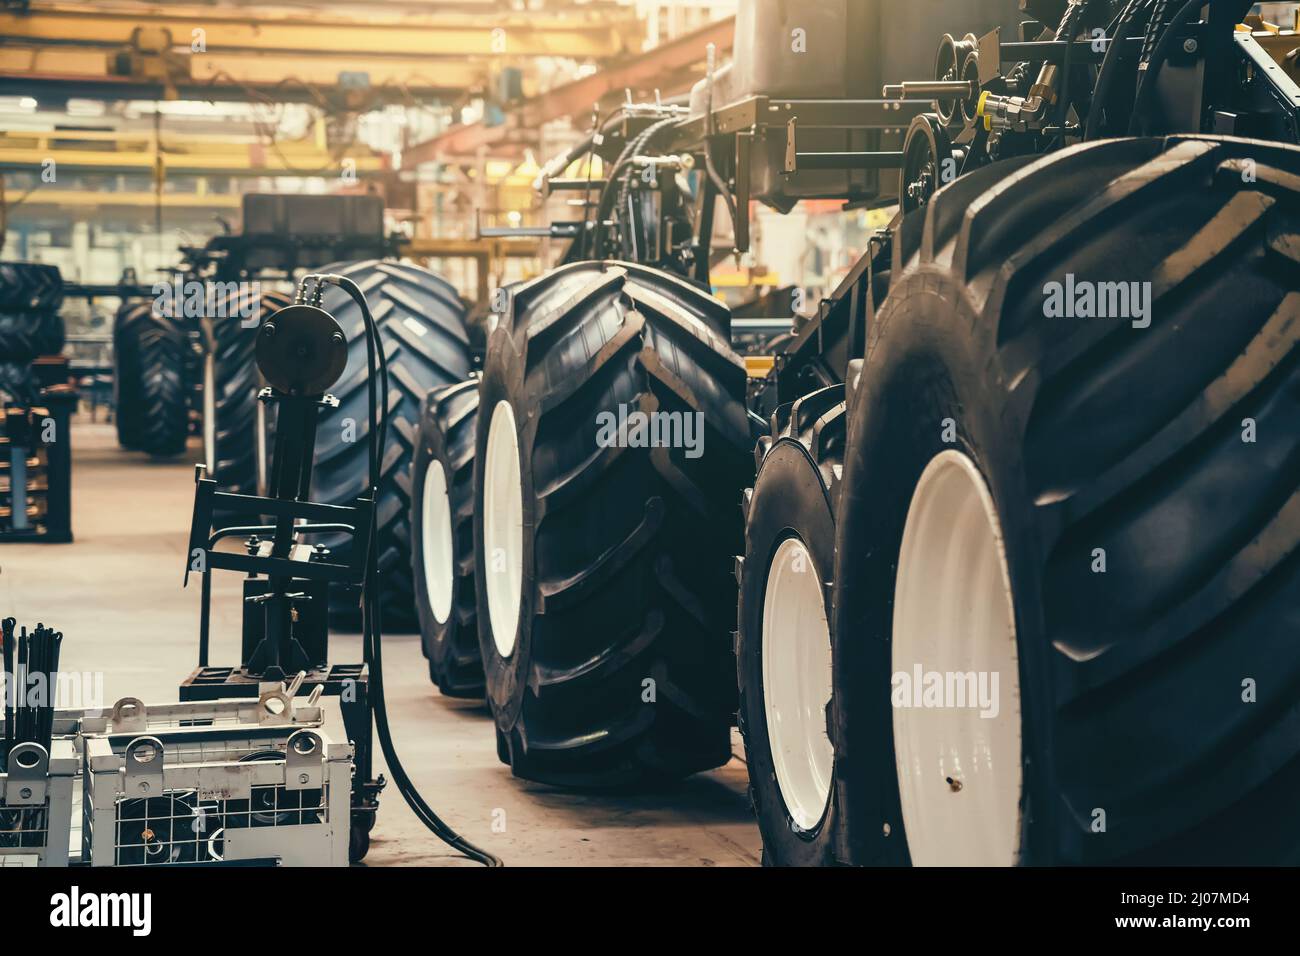 Ligne de convoyeur pour la production et l'assemblage de grandes machines industrielles, de tracteurs ou de moissonneuses-batteuses avec pneus en caoutchouc en usine. Banque D'Images